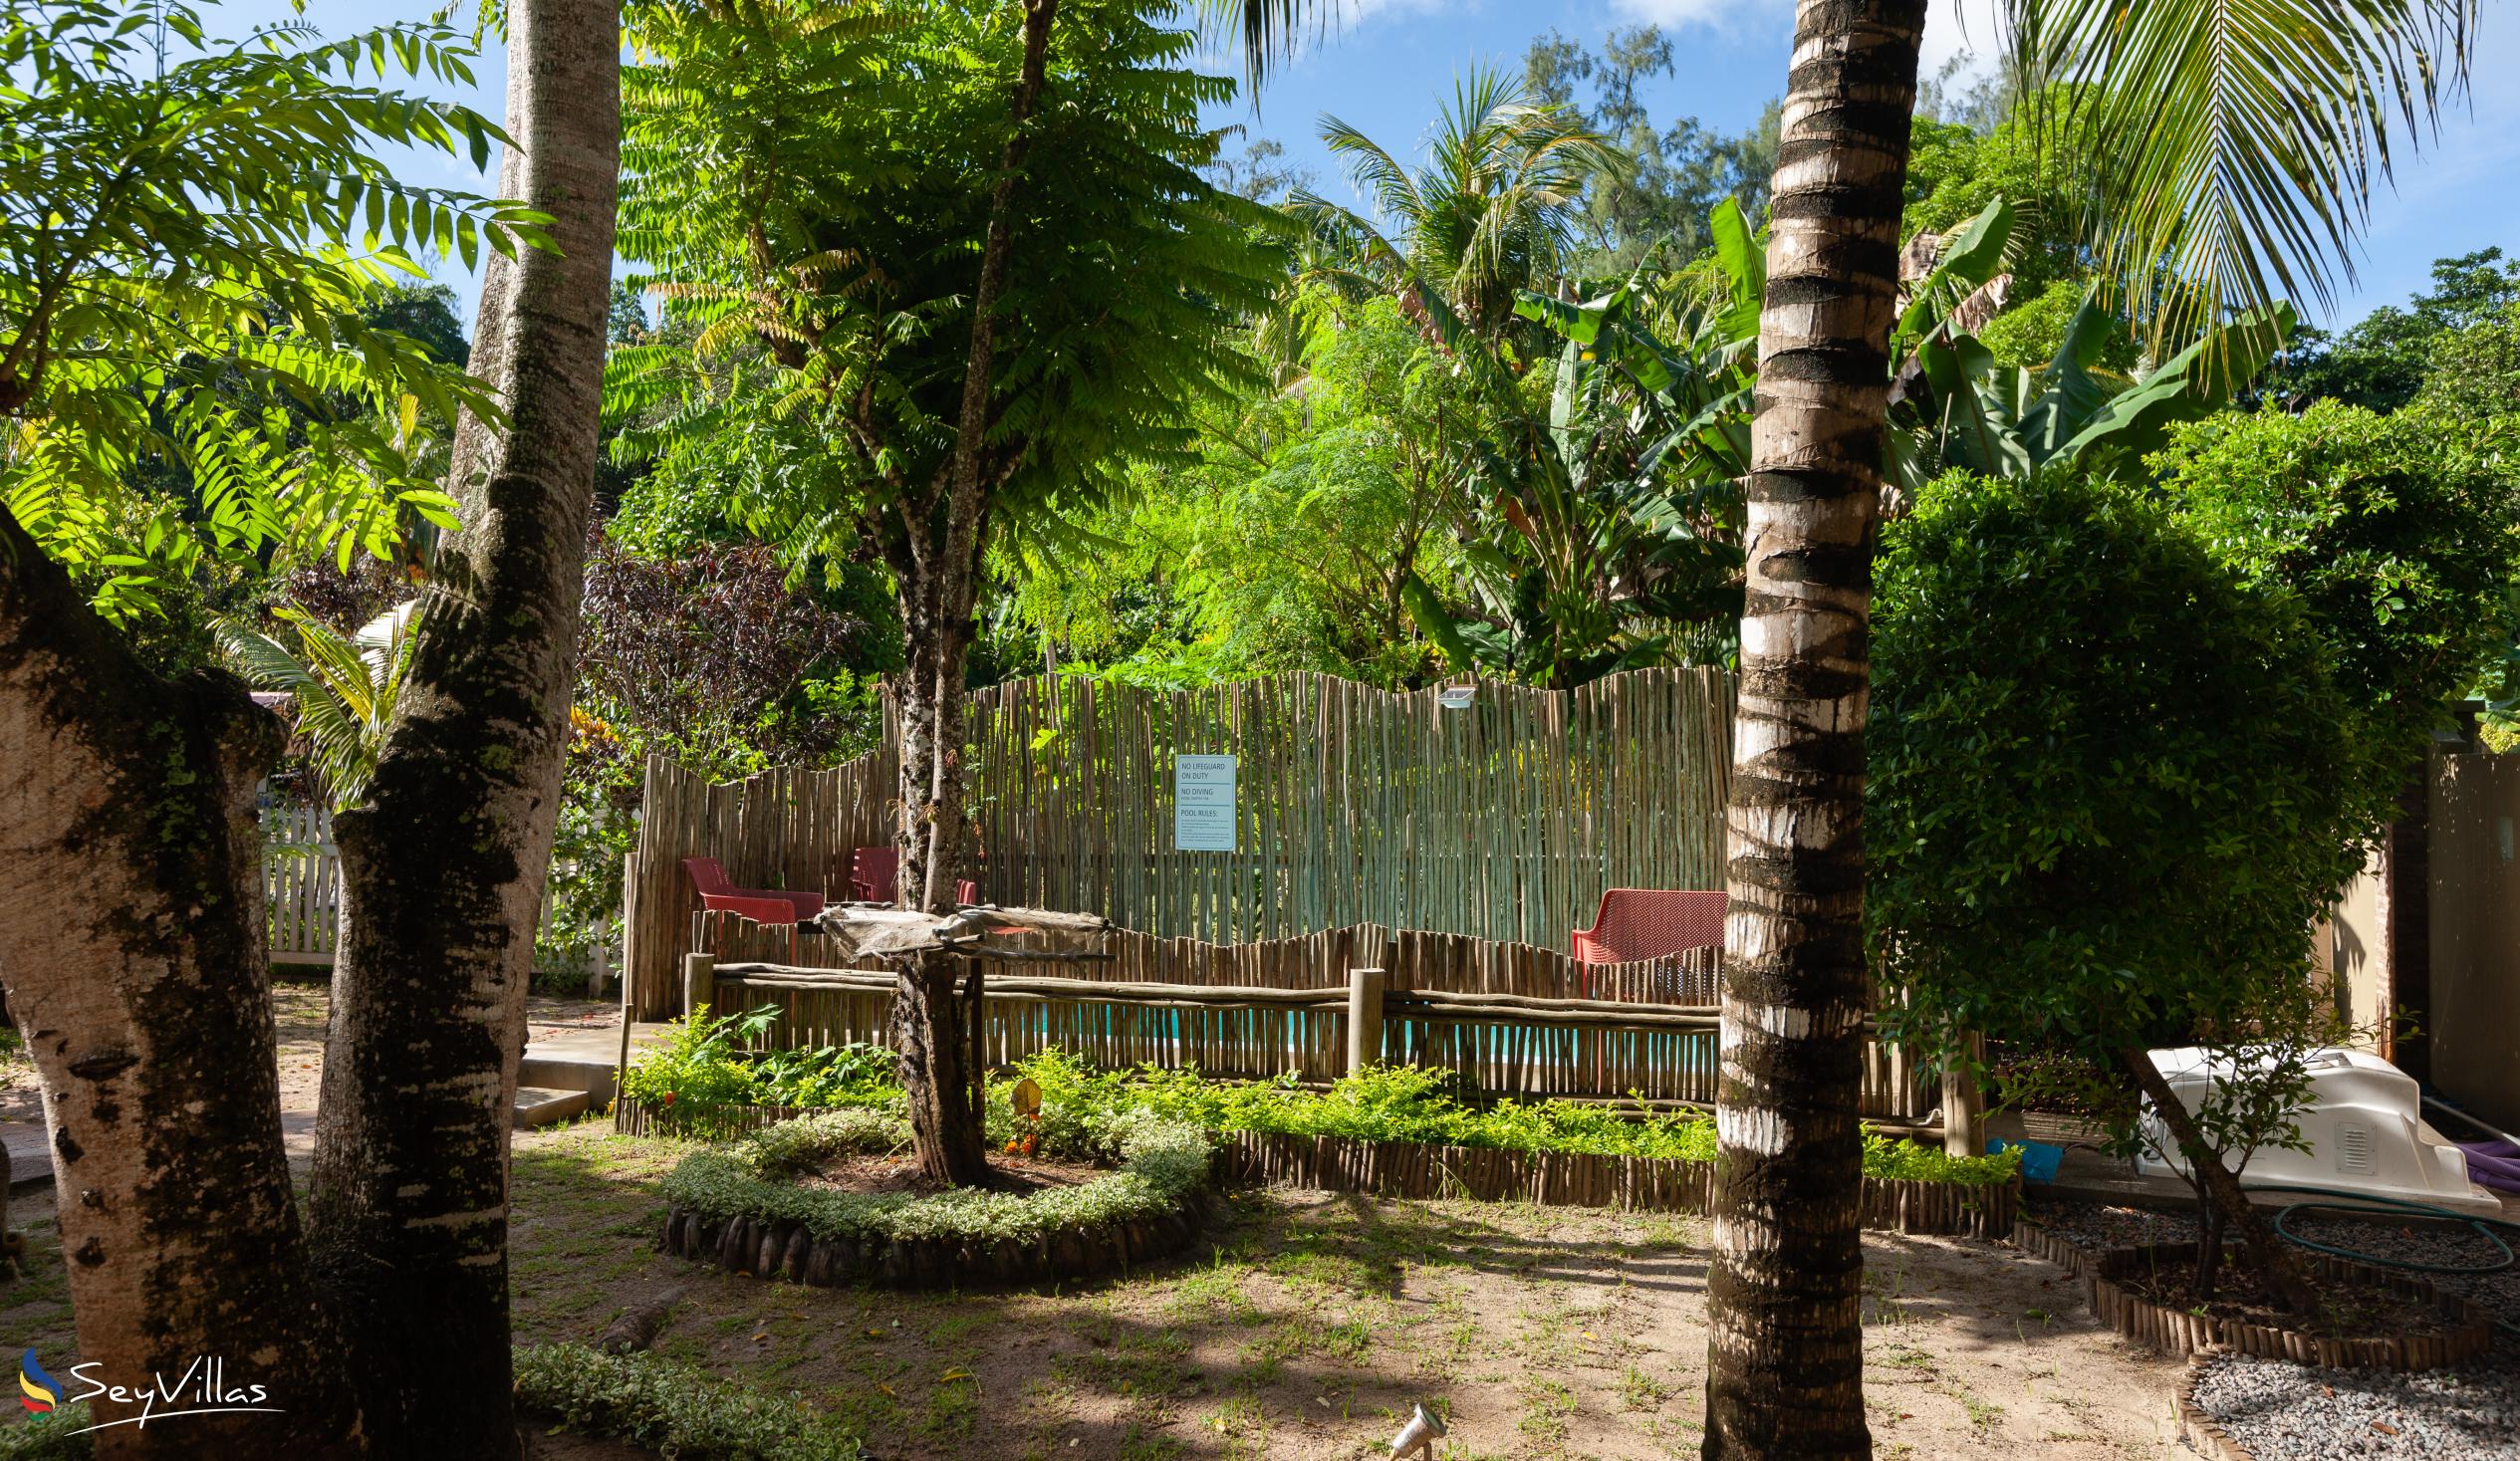 Photo 84: Casa de Leela - 2-Bedroom Luxury Bungalow with Private Plunge Pool - La Digue (Seychelles)